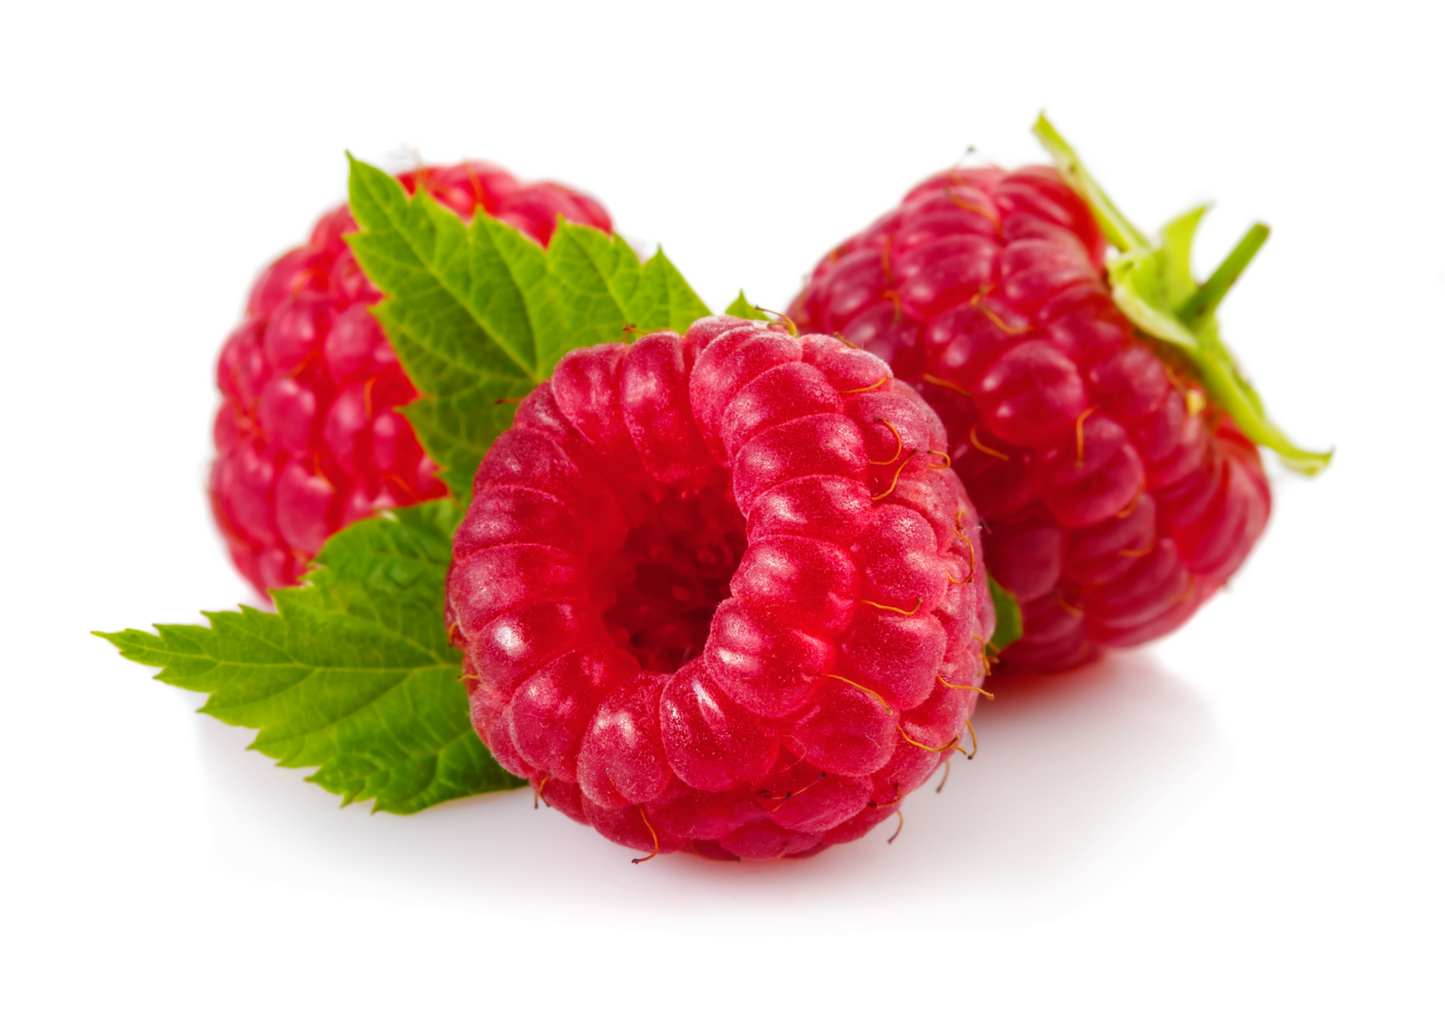 Fruit Plants - Raspberry 'Joan J' - 2 x Full Plants in 2 Litre Pots